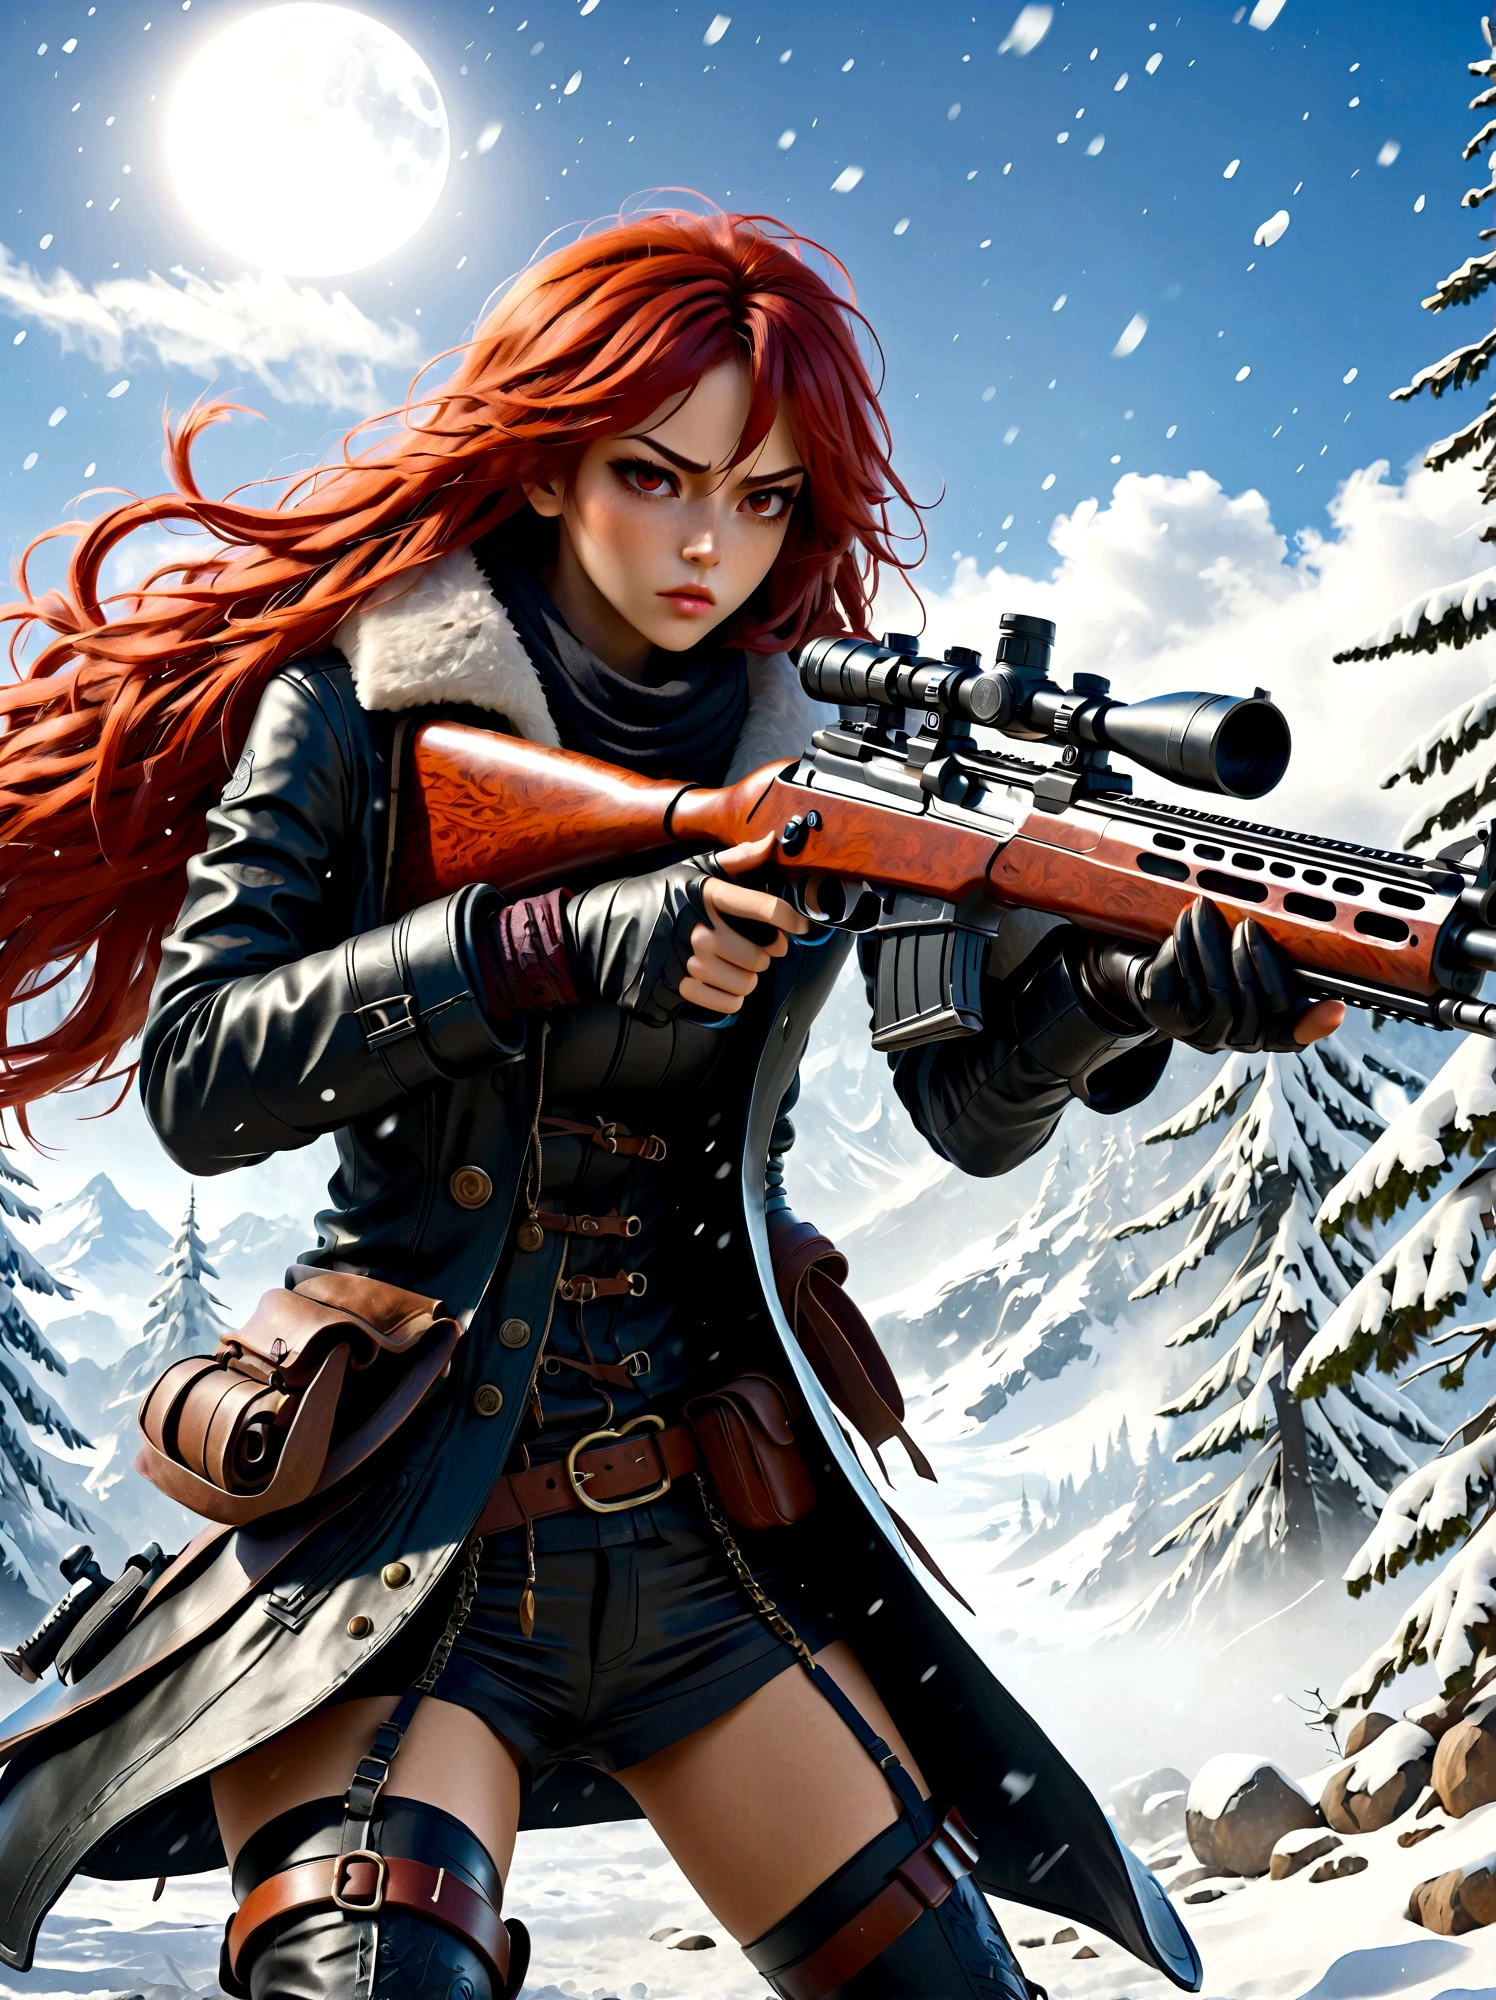 Chica sosteniendo un rifle, (mirada disgustada:1.5), Postura de lucha contra la nieve, este, Cuchilla y el alma, estilo de tinta, pelo largo de color rojo, Abrigos de cuero y piel., frío, obra de arte, 3d, 4k, detallado, práctico